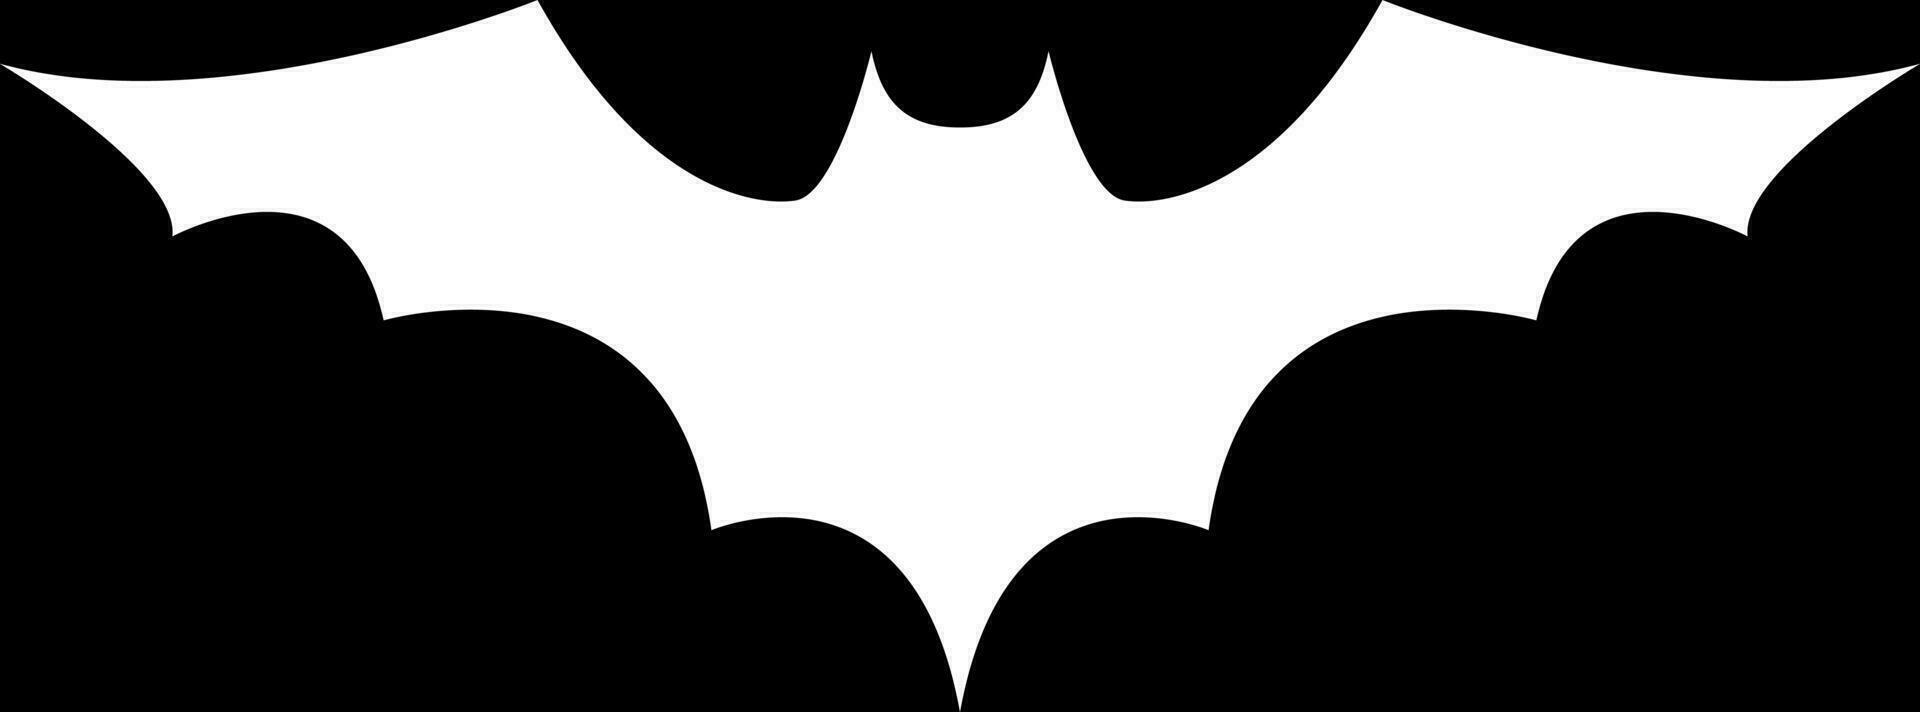 pipistrello silhouette per Halloween vettore